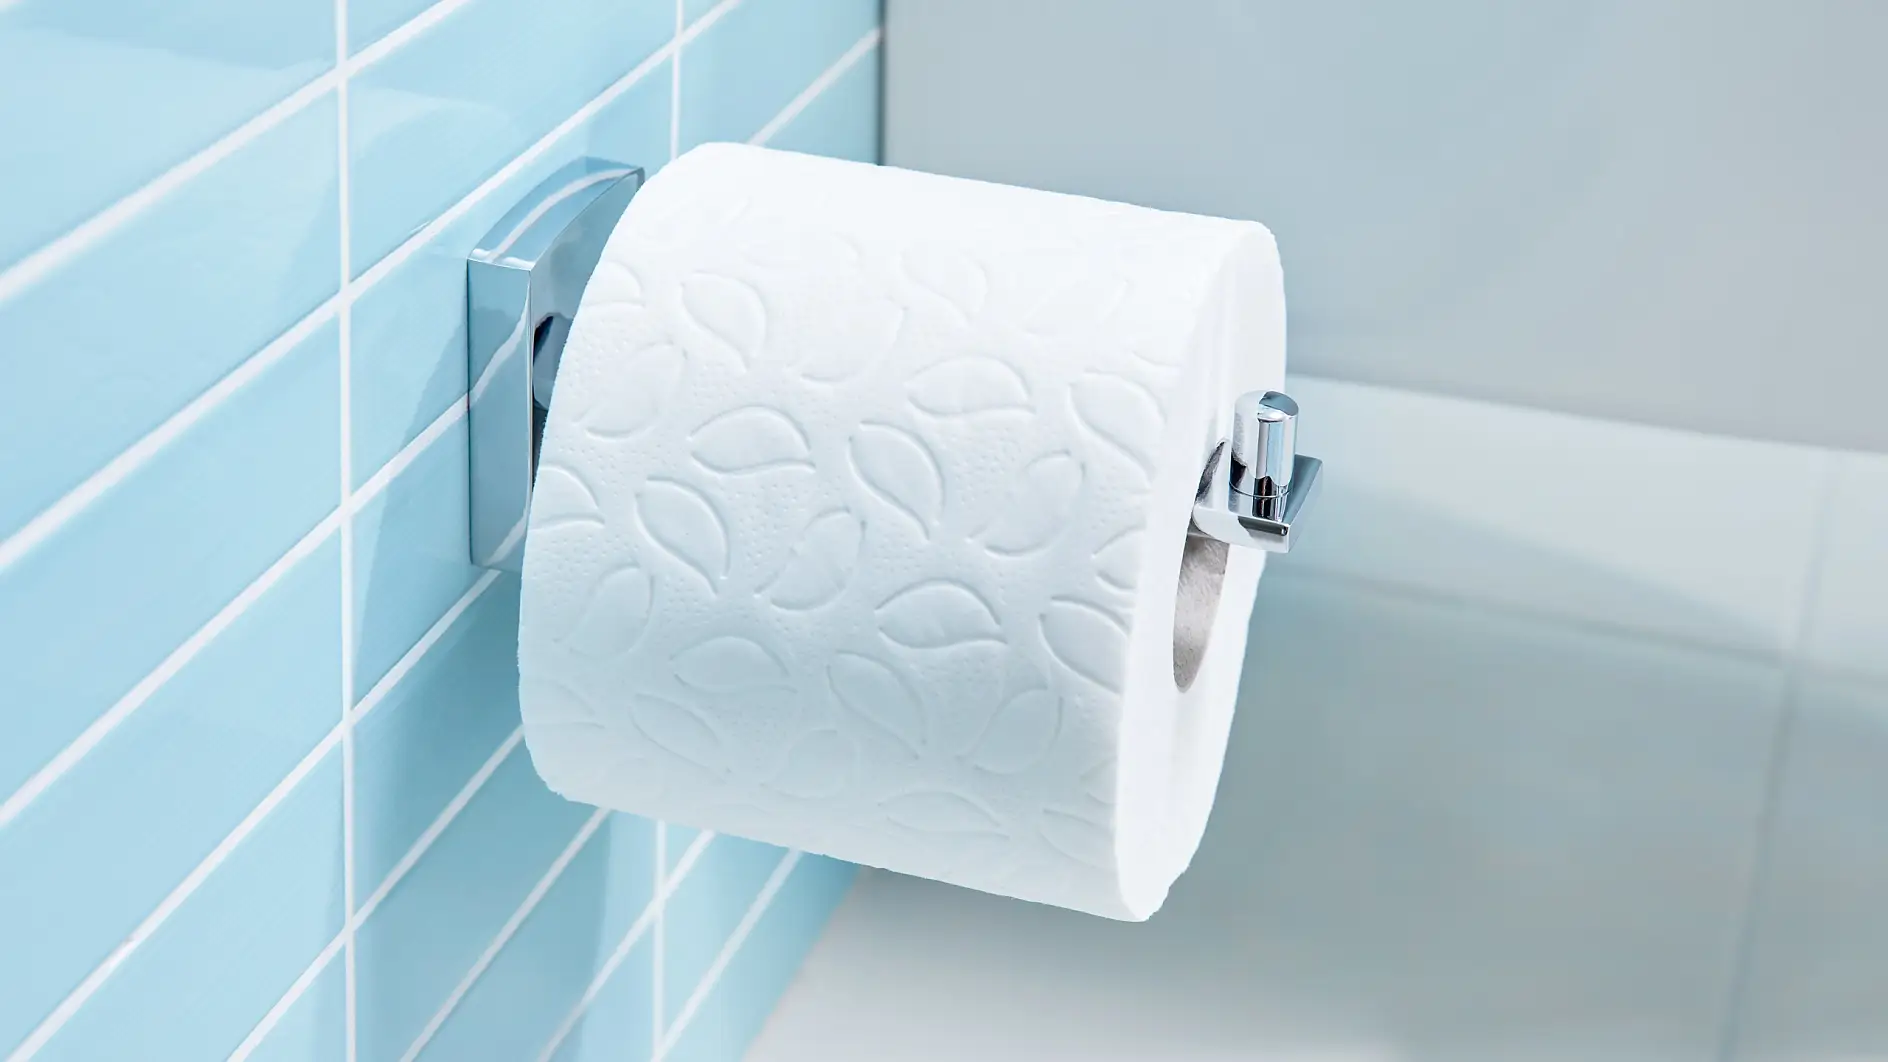 Egyszerű kialakítású termékek, amelyek gondoskodnak arról, hogy mindig kéznél legyen a toalettpapír.